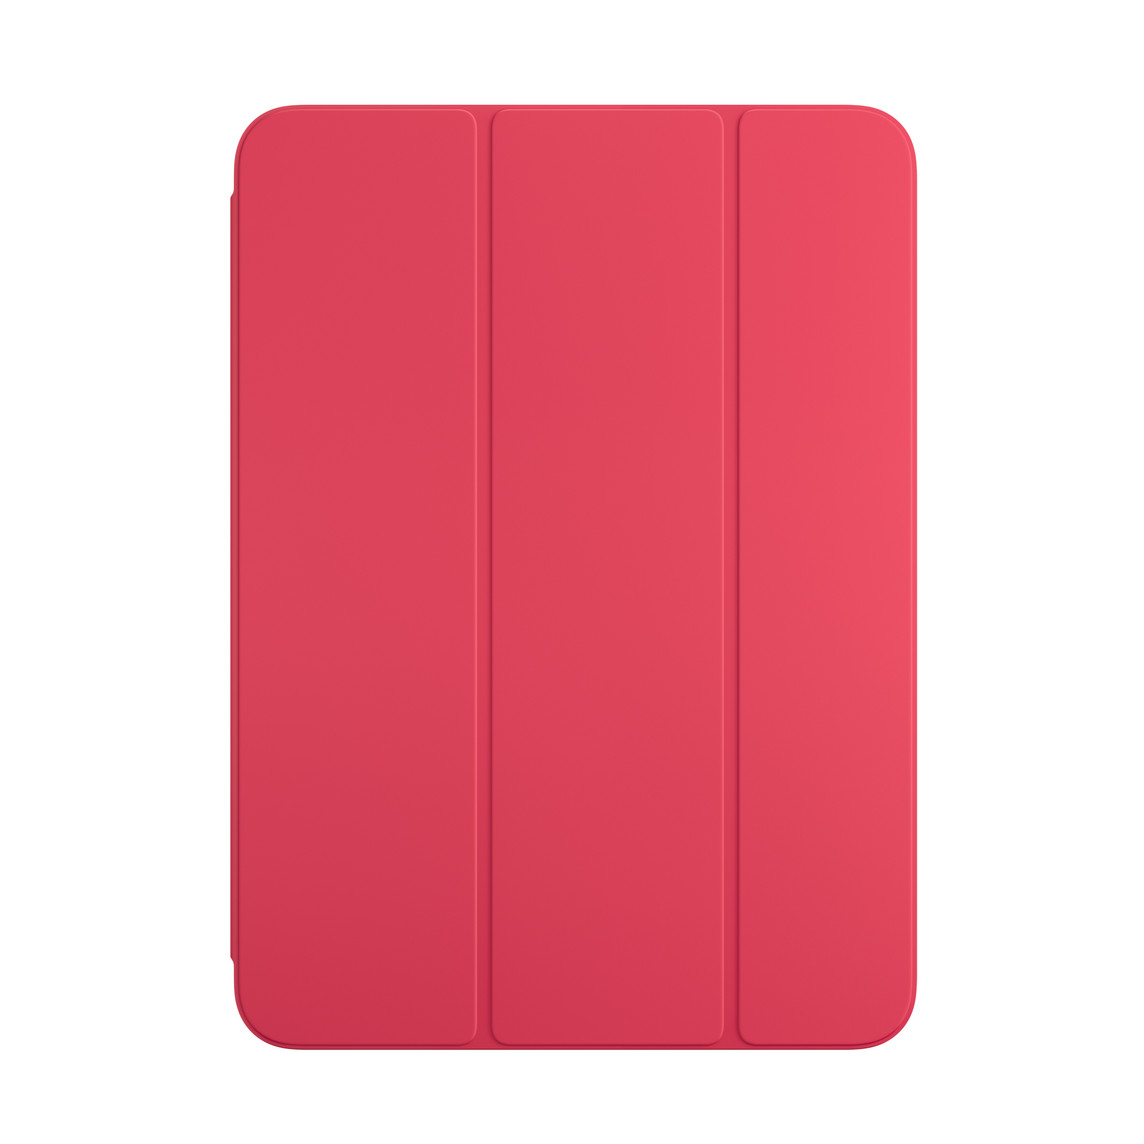 Widoczne od przodu etui Smart Folio w kolorze arbuzowym do iPada 